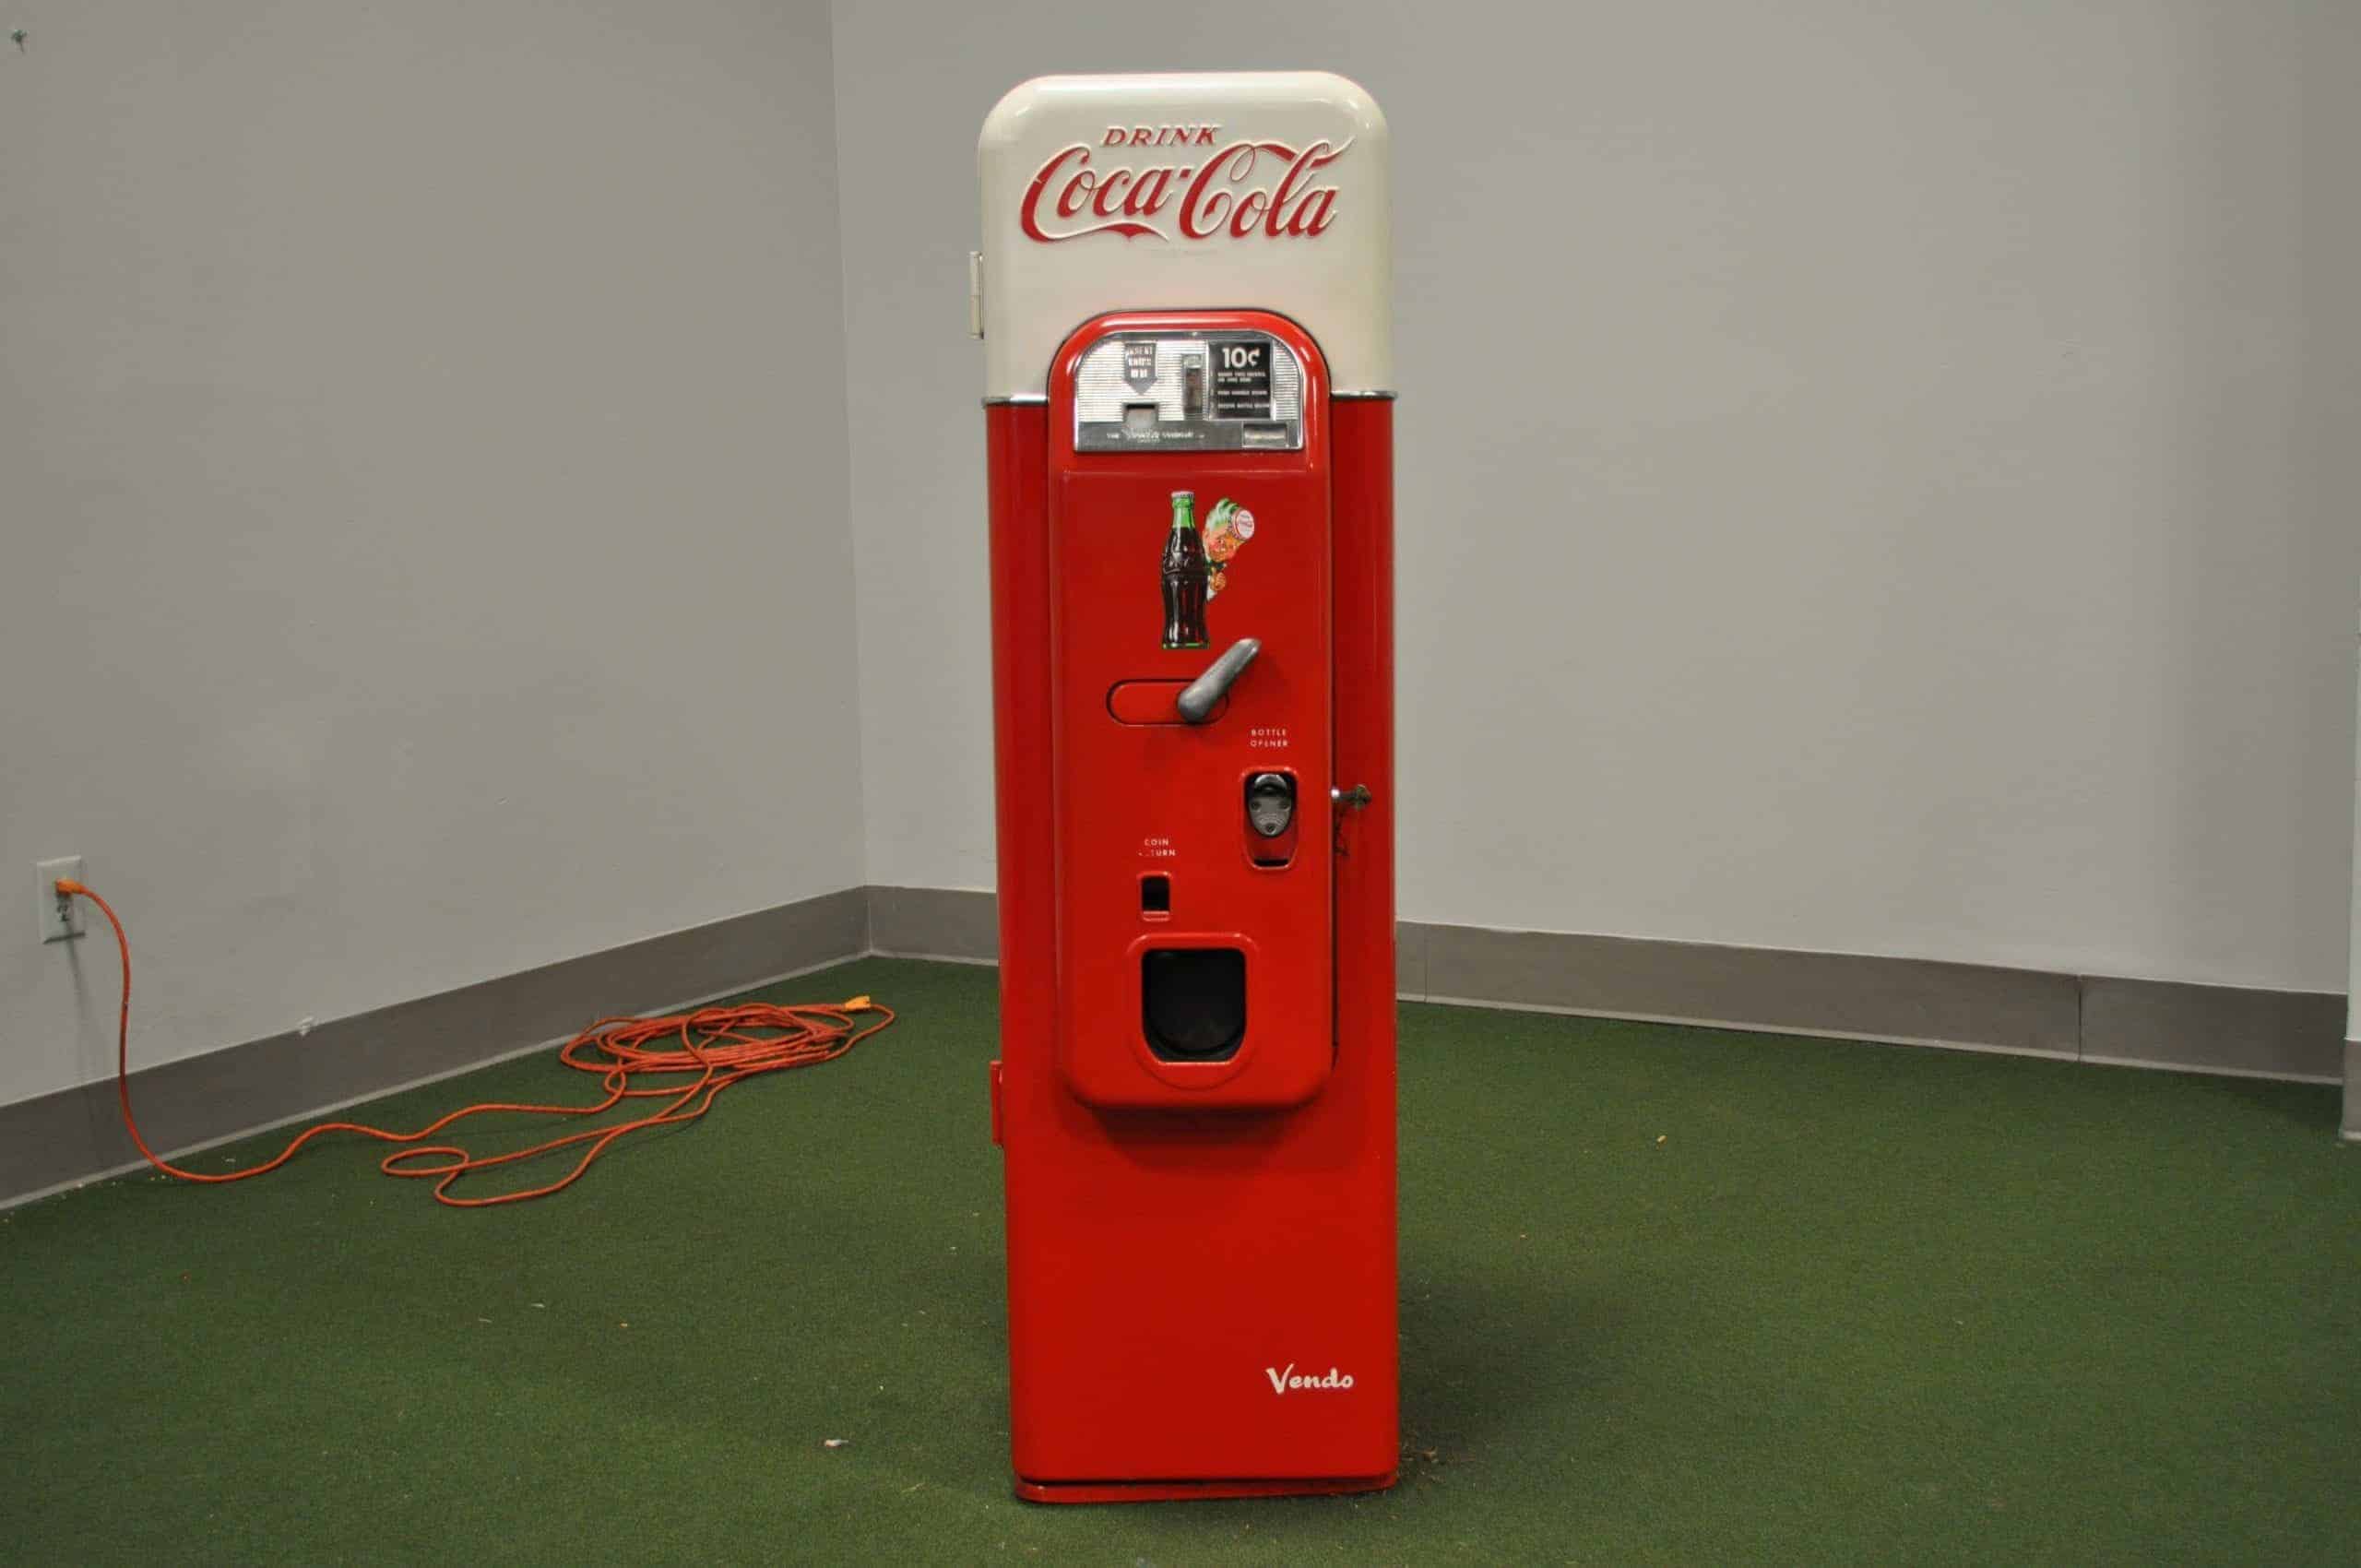 Coca-cola Vendo 44 Soda Machine